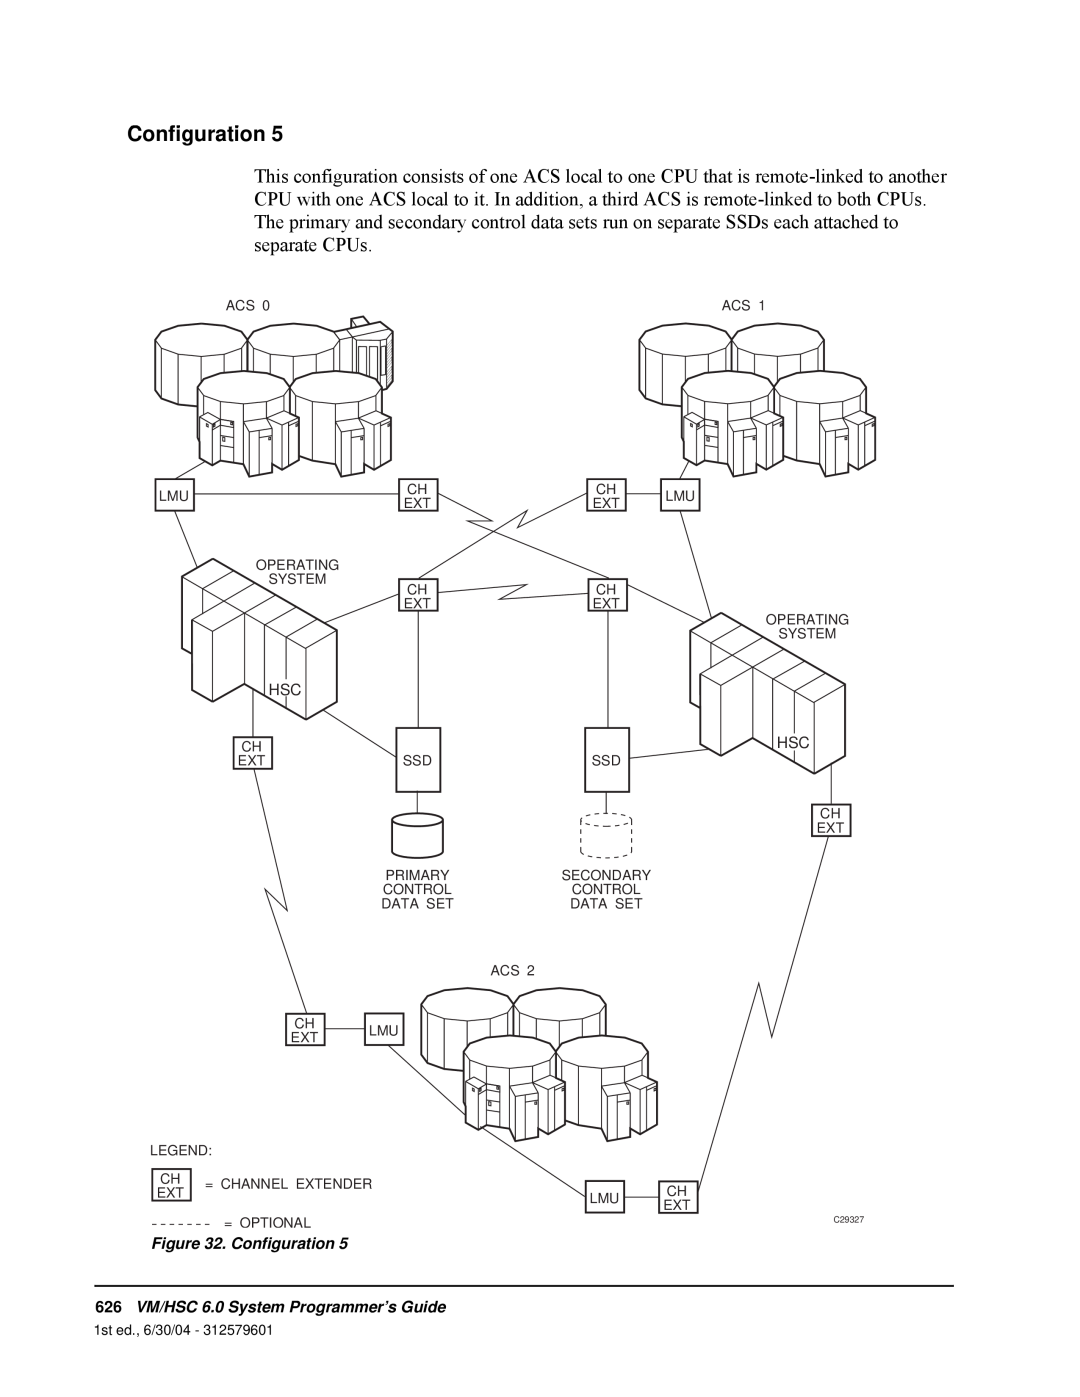 StorageTek manual Configuration, 626VM/HSC 6.0 System Programmer’s Guide 